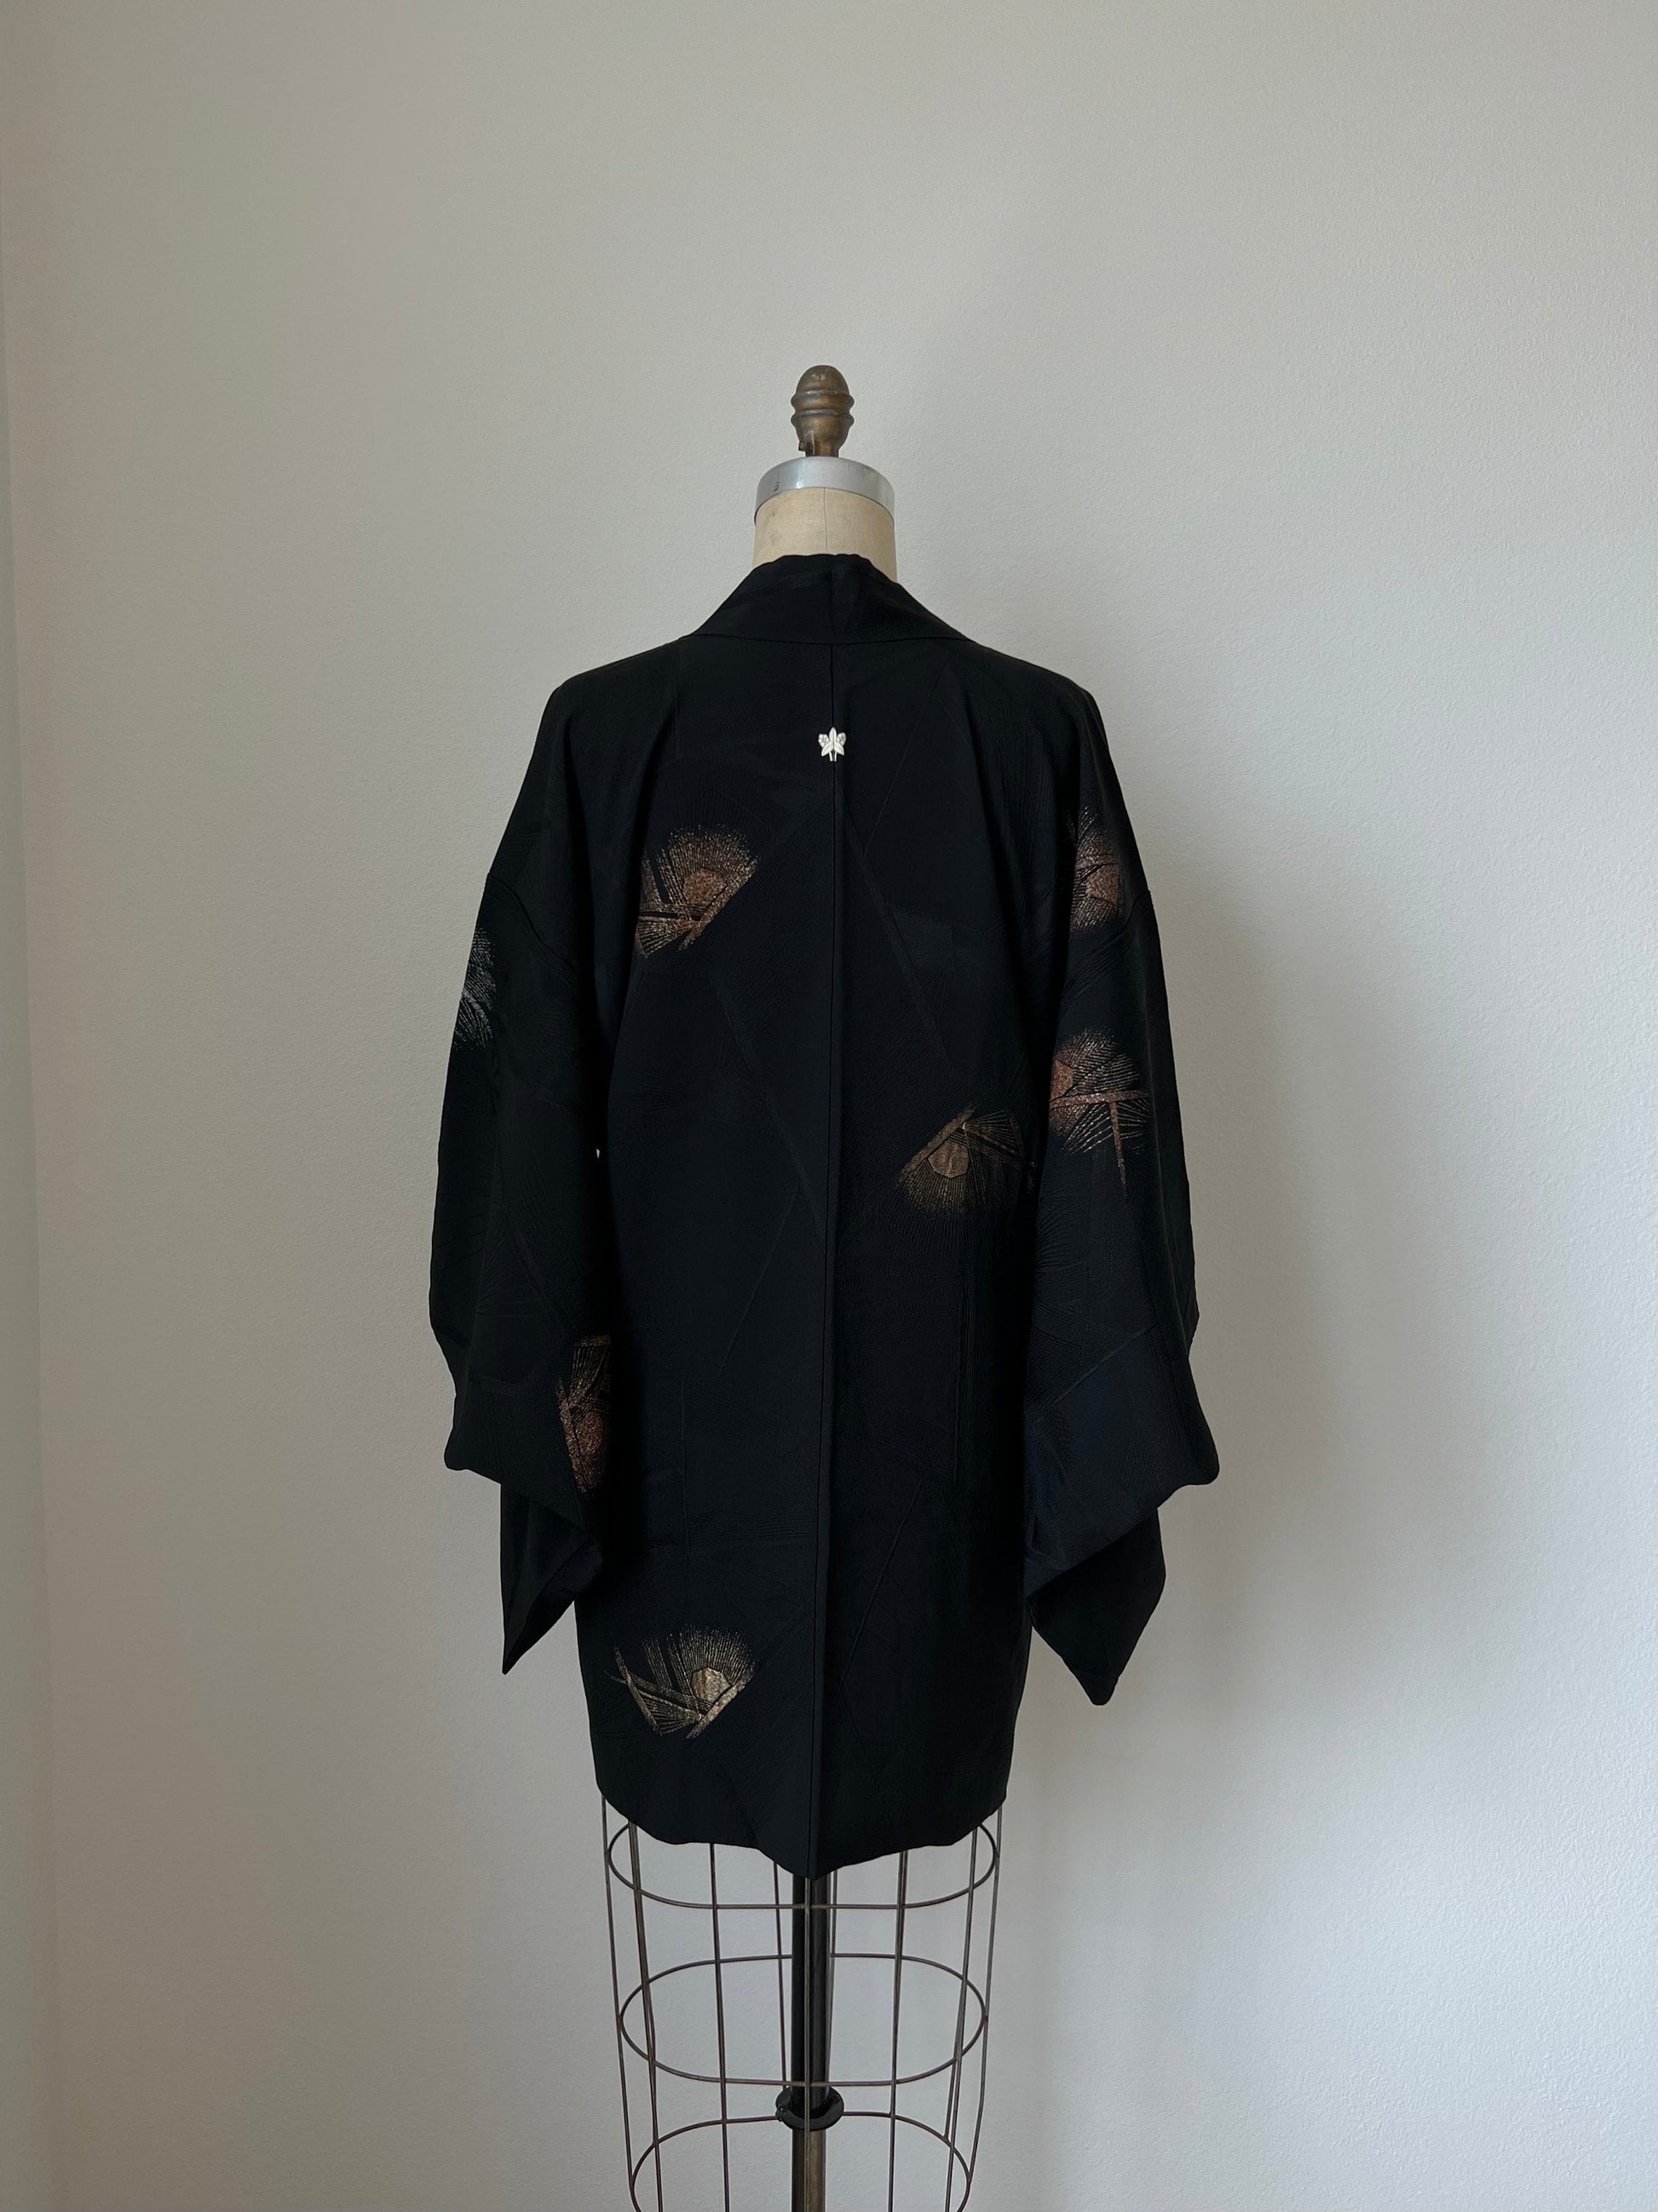 Back image, antique Japanese black haori kimono jacket